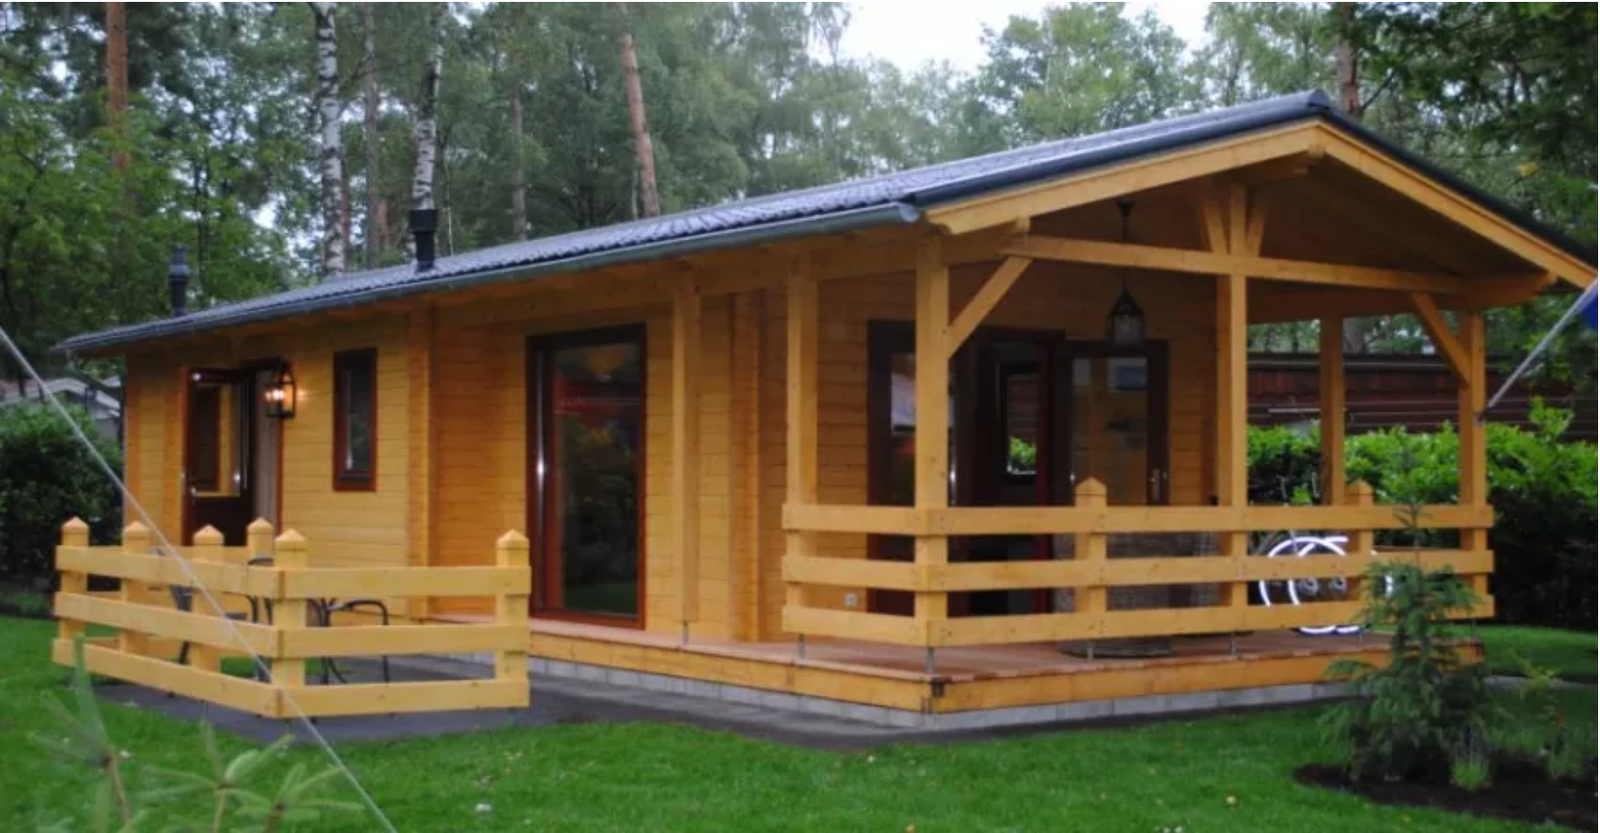 Super Cool Little Log Cabin, Take A Peek Inside!